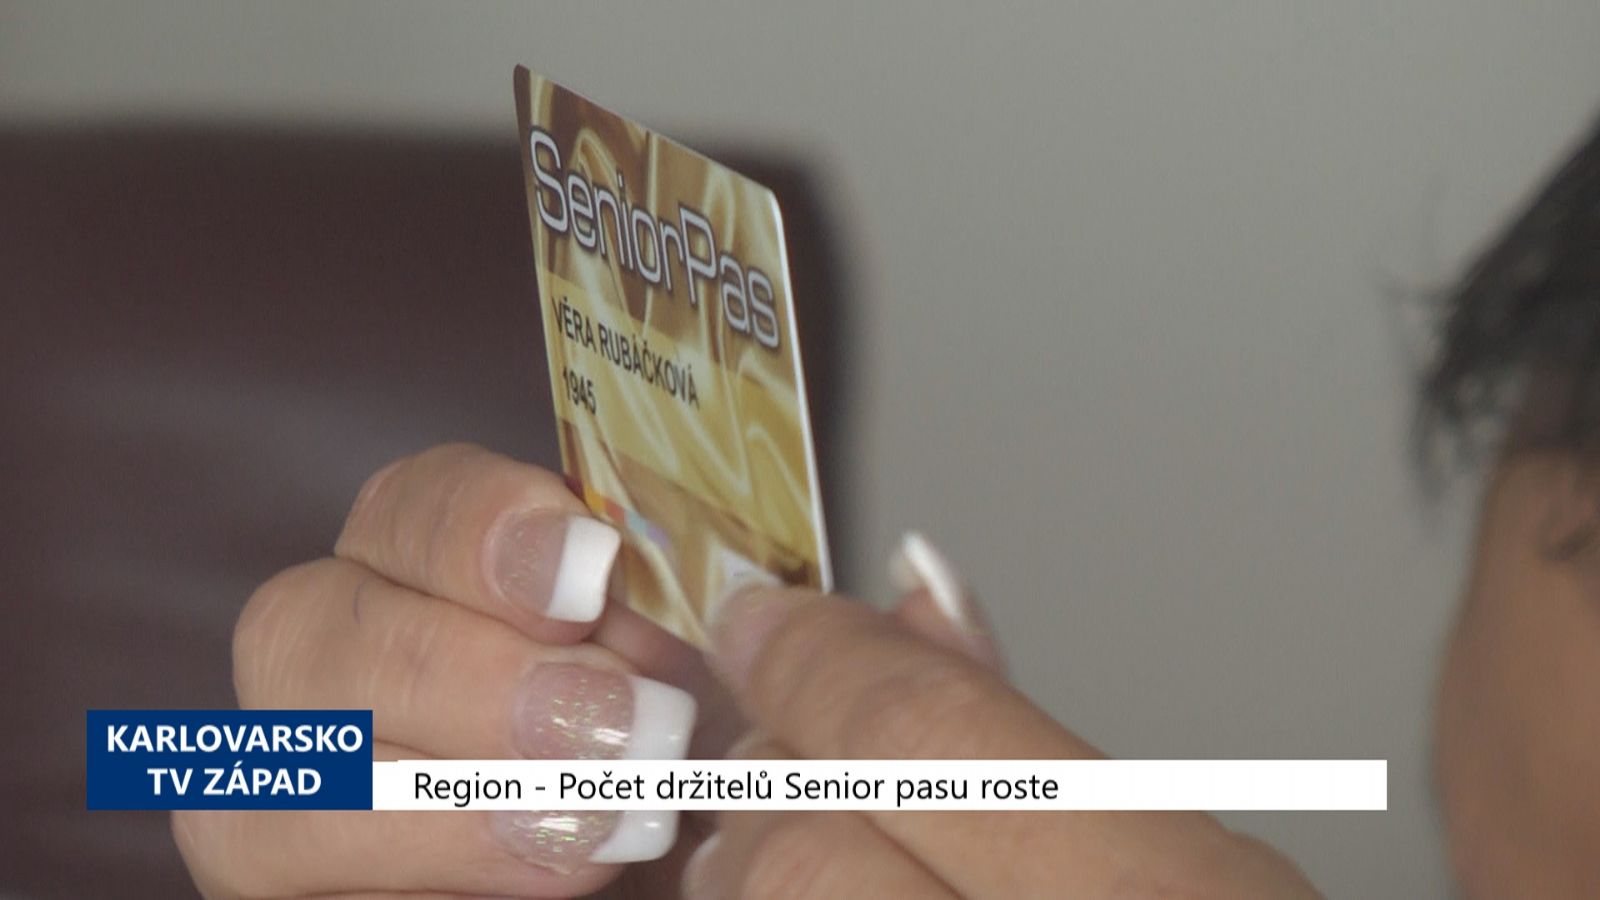 Region: Počet držitelů senior pasu roste (TV Západ)